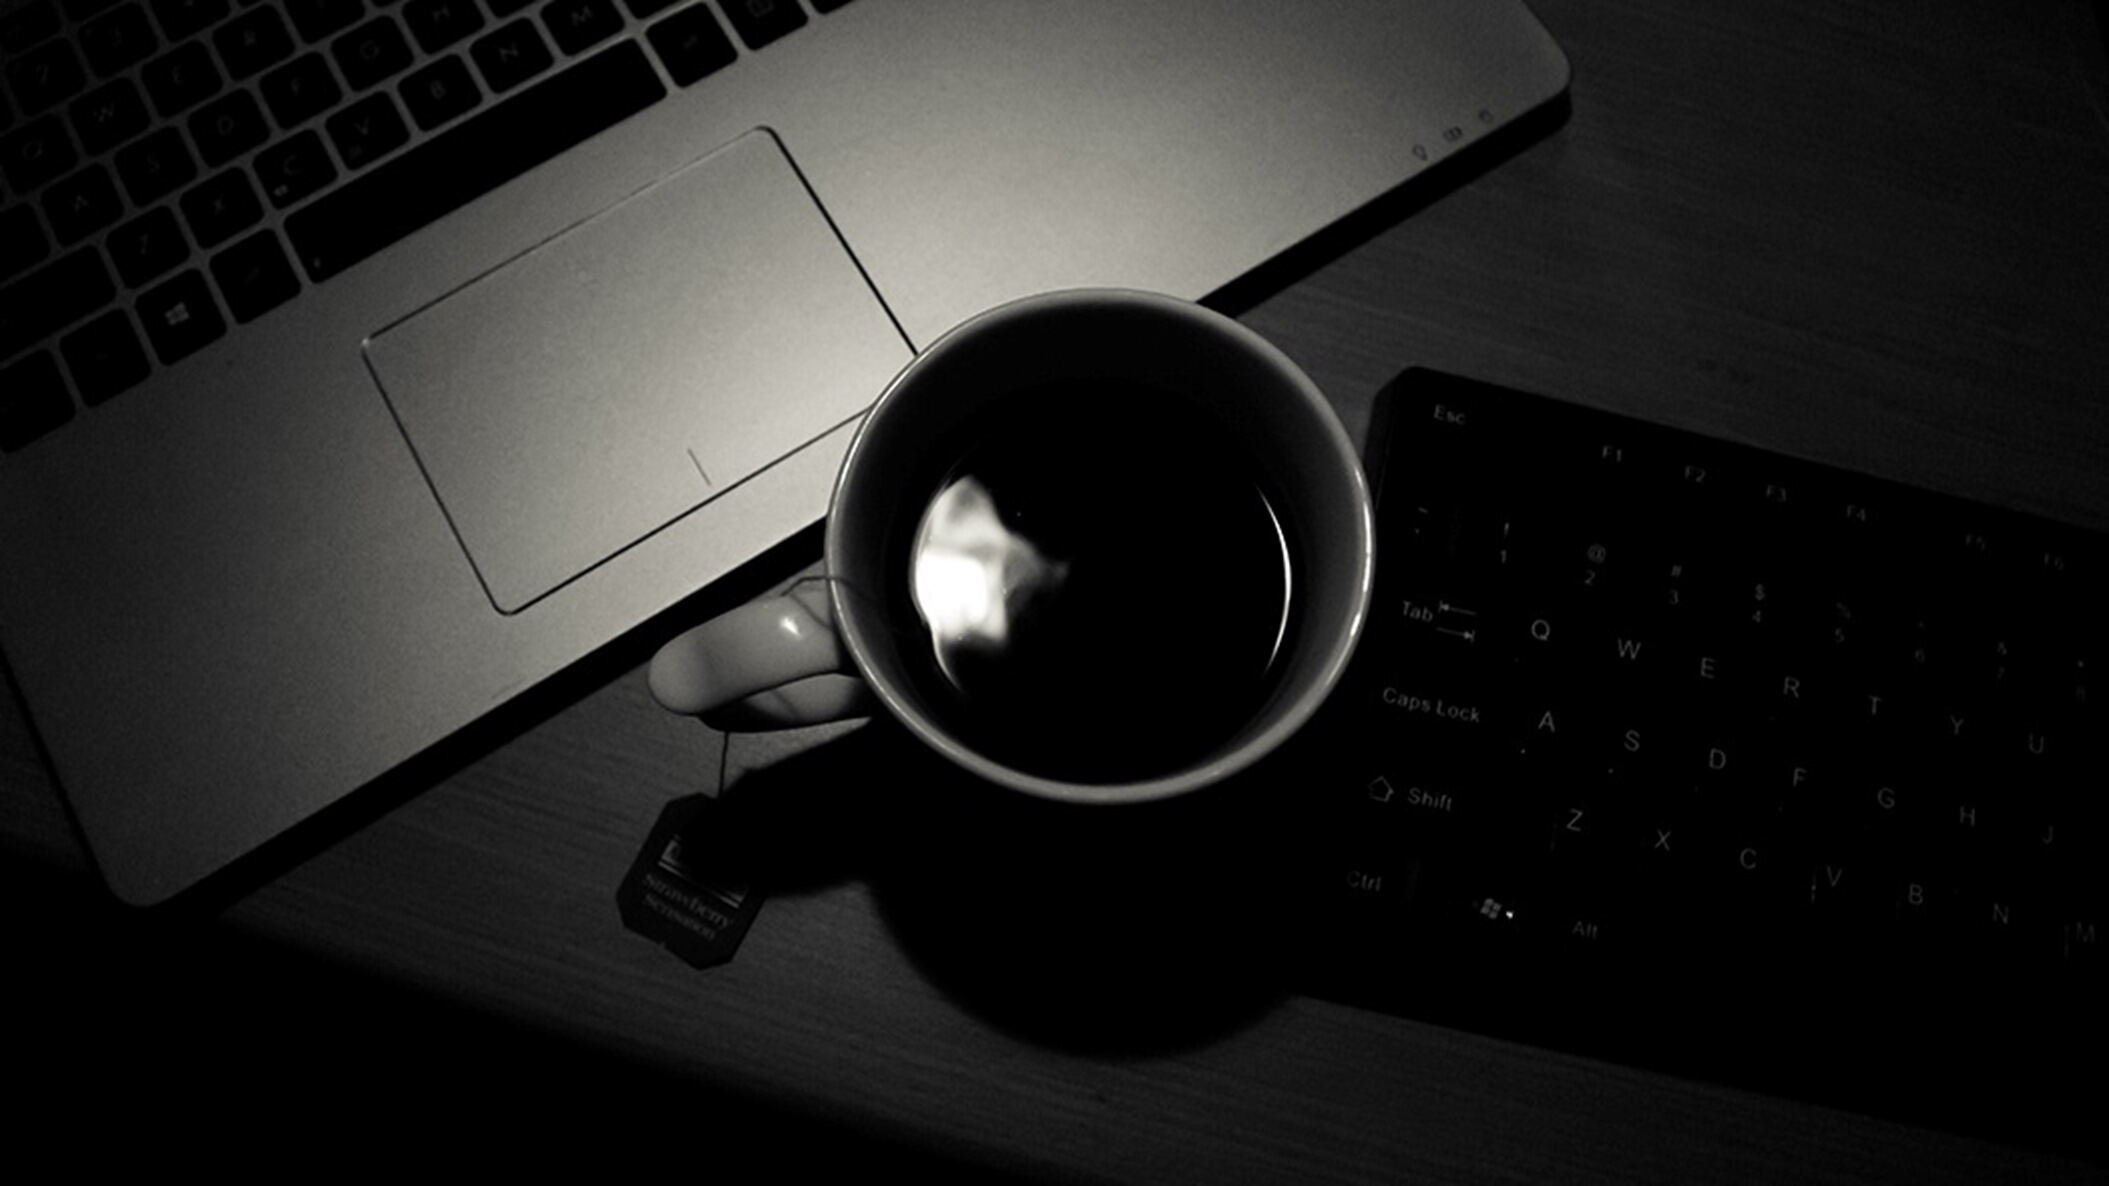 黑色笔记本咖啡杯键盘PPT背景图片